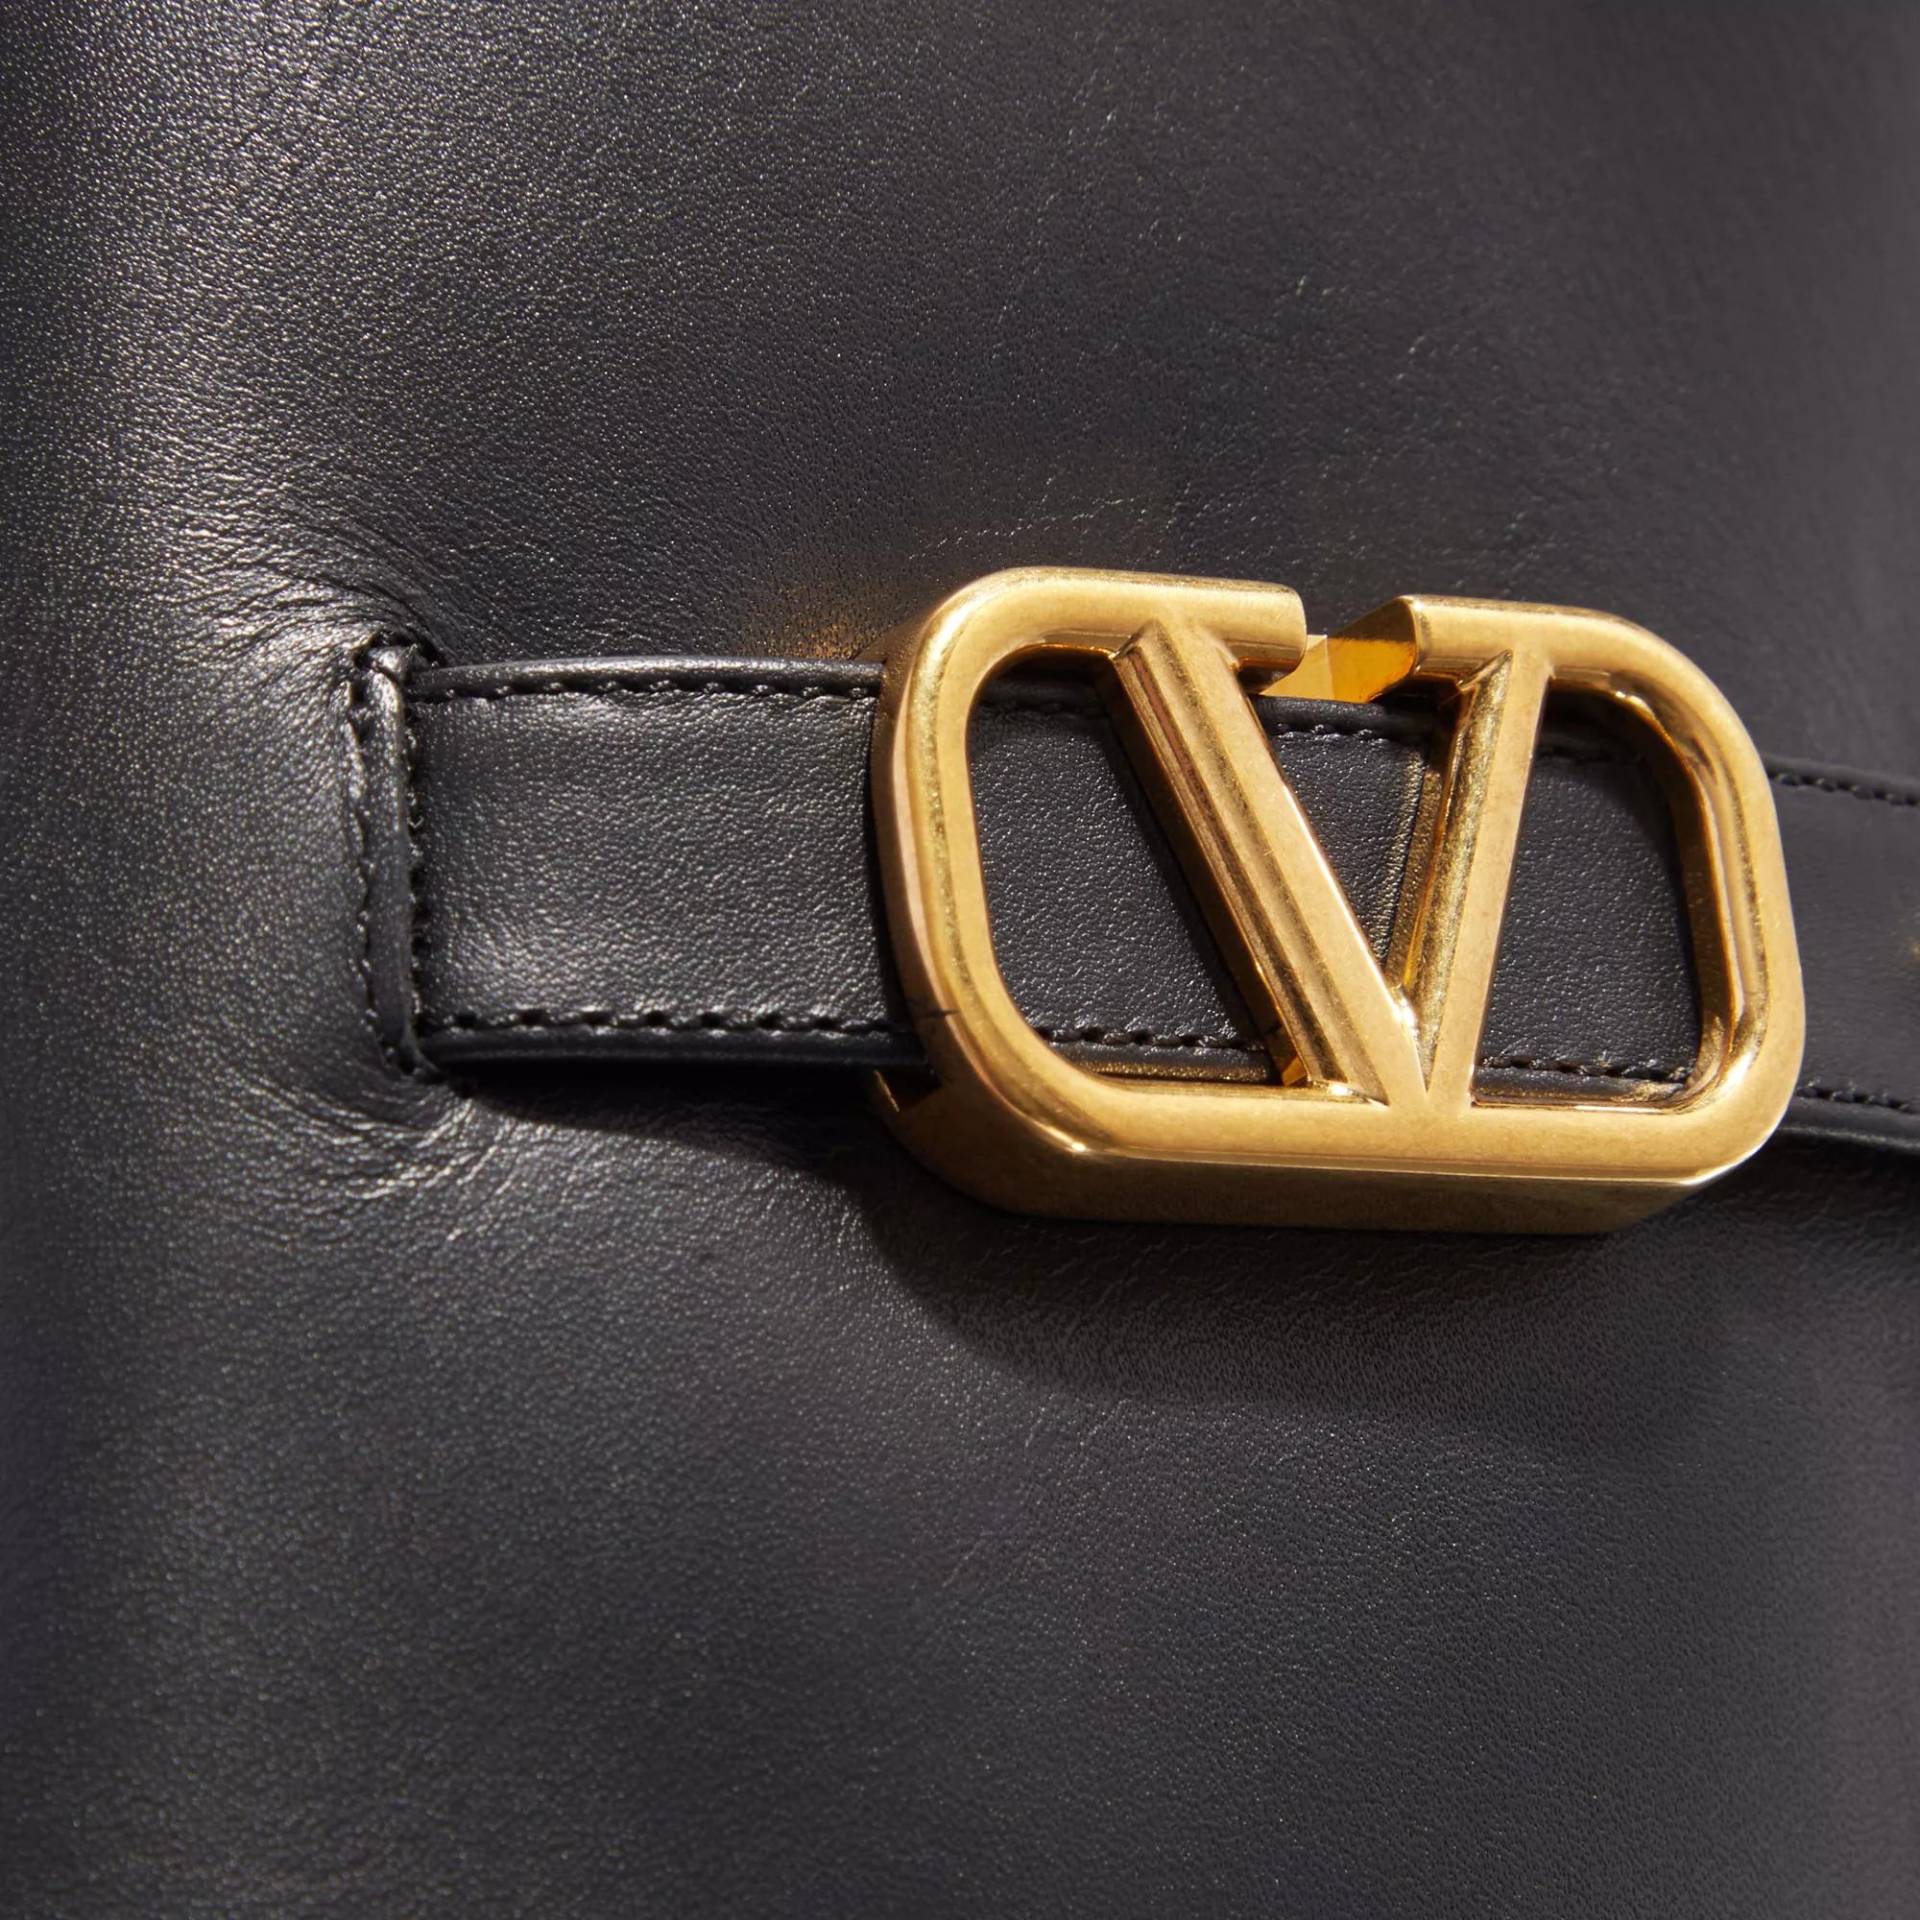 Valentino Garavani Boots & Stiefeletten - Signature Smooth Leather Boots - Gr. 36 (EU) - in Schwarz - für Damen von Valentino Garavani